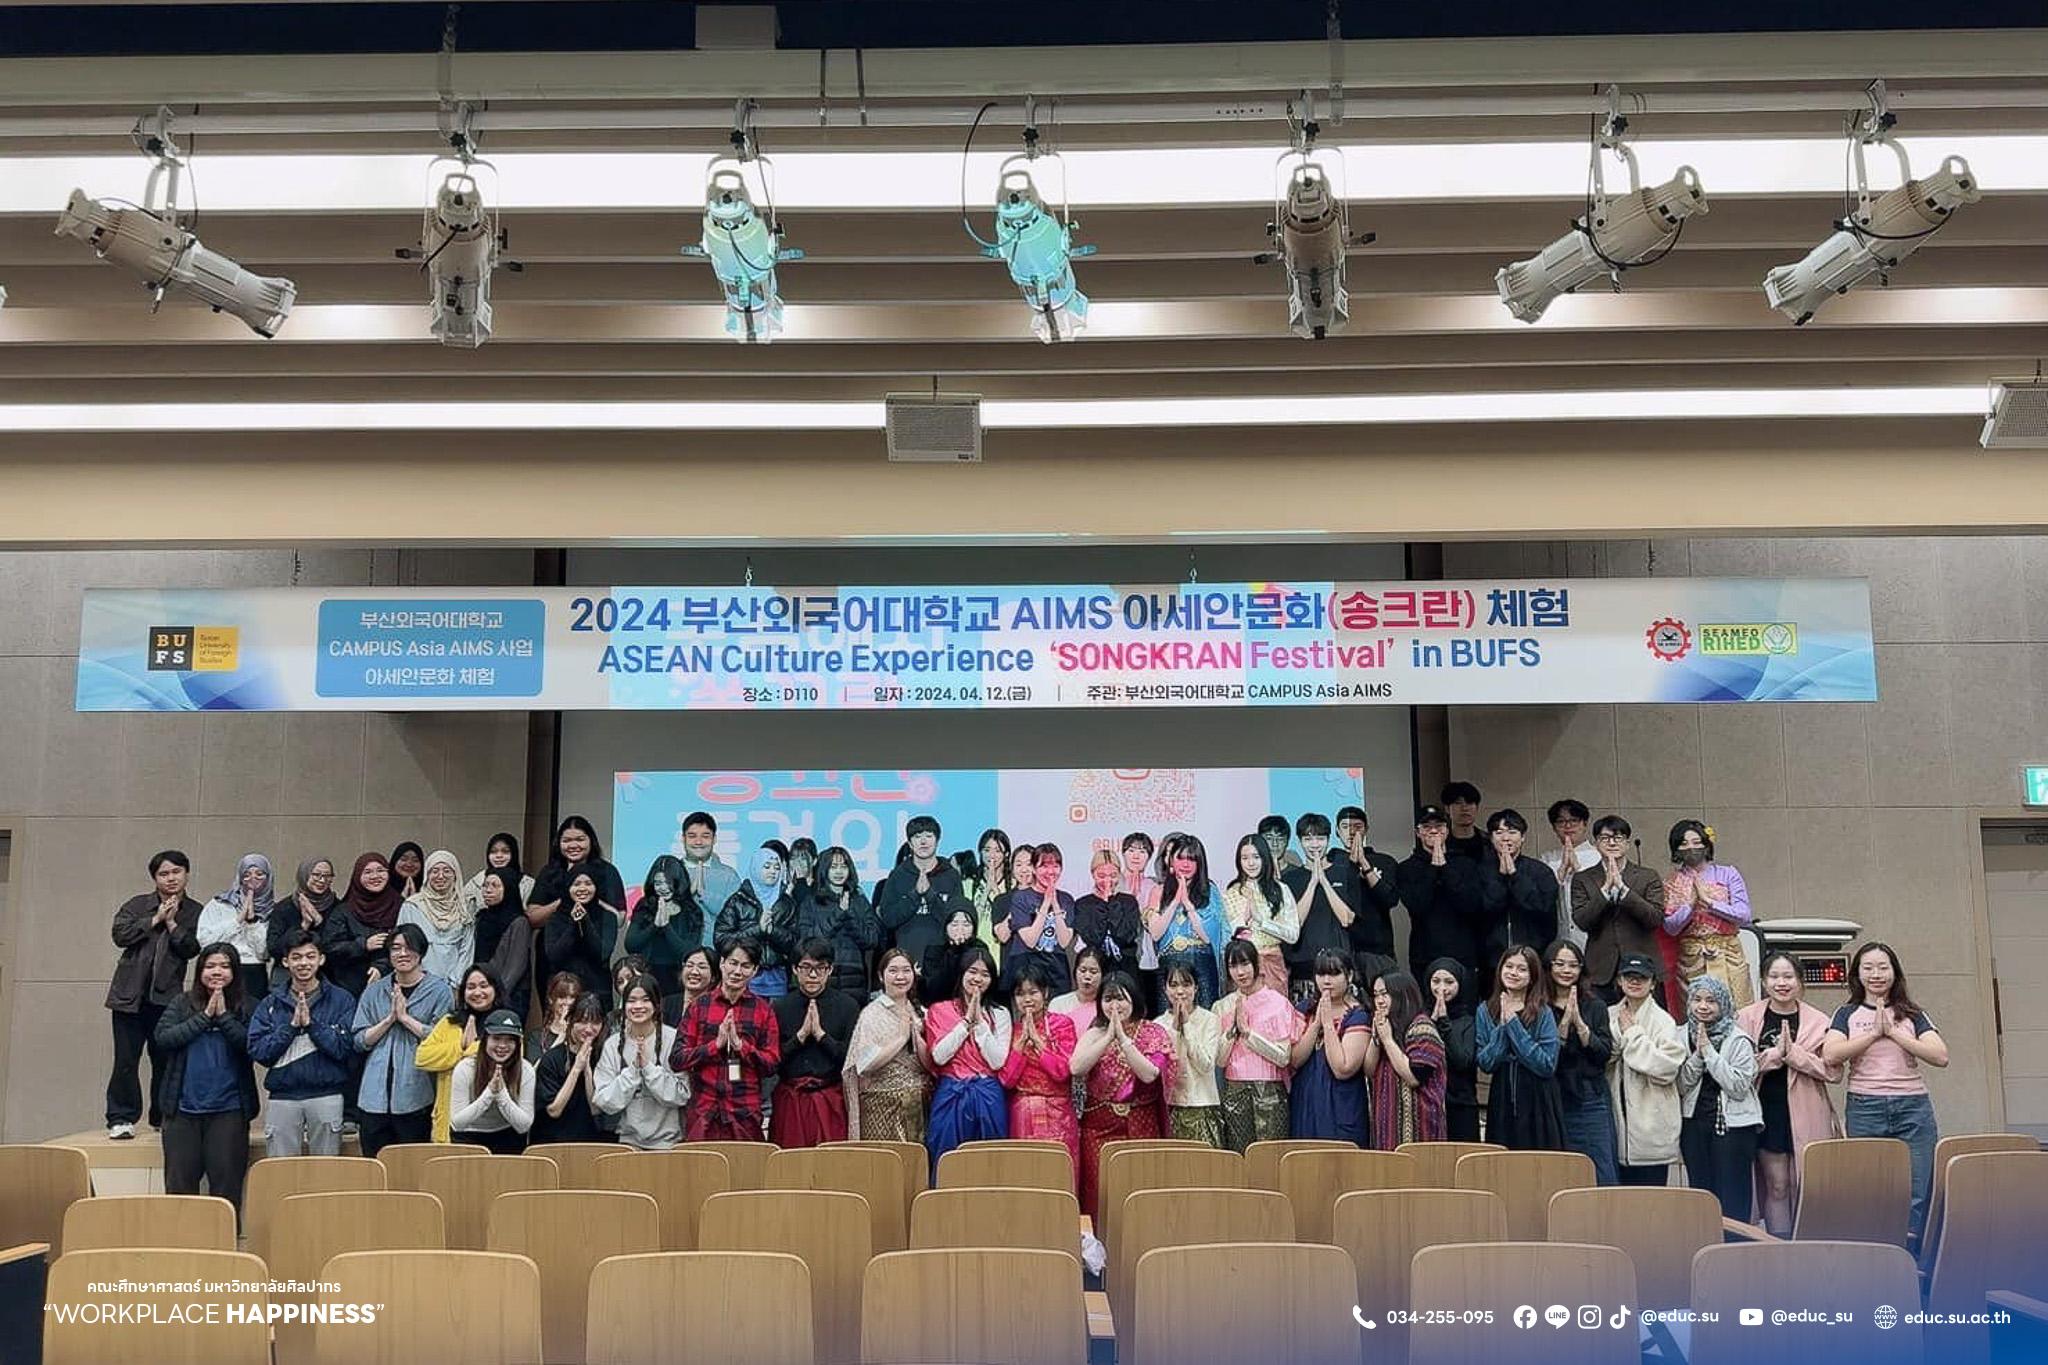 โครงการพัฒนาประสบการณ์วิชาชีพและศึกษาดูงานด้านการการเรียนการสอนภาษาไทยให้ชาวต่างชาติ ณ Busan University of Foreign Studiesสาธารณรัฐเกาหลี (เกาหลีใต้)